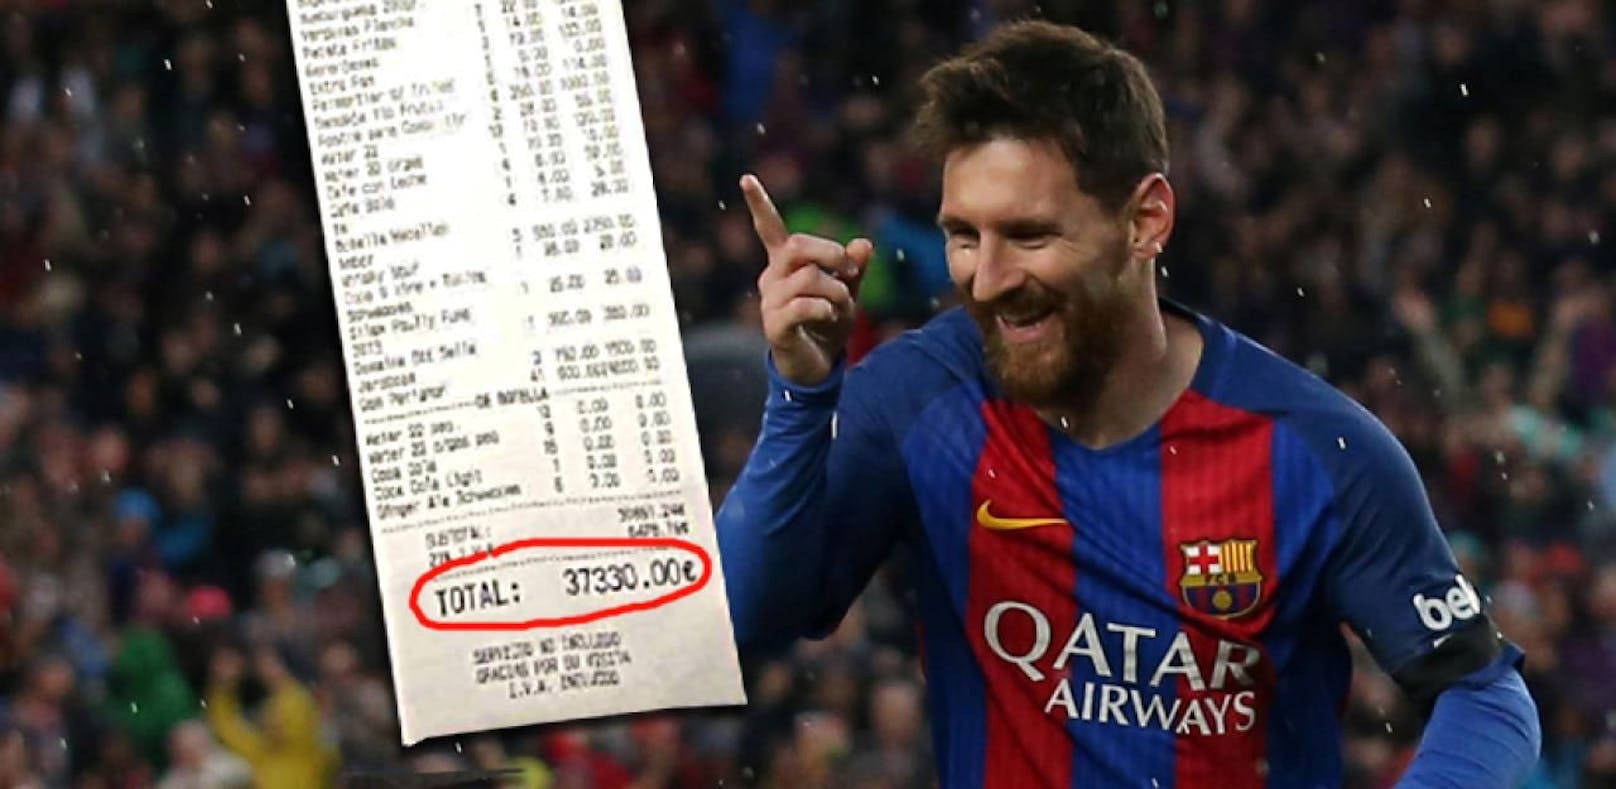 37.000-€-Party auf Ibiza! Jetzt wehrt sich Messi